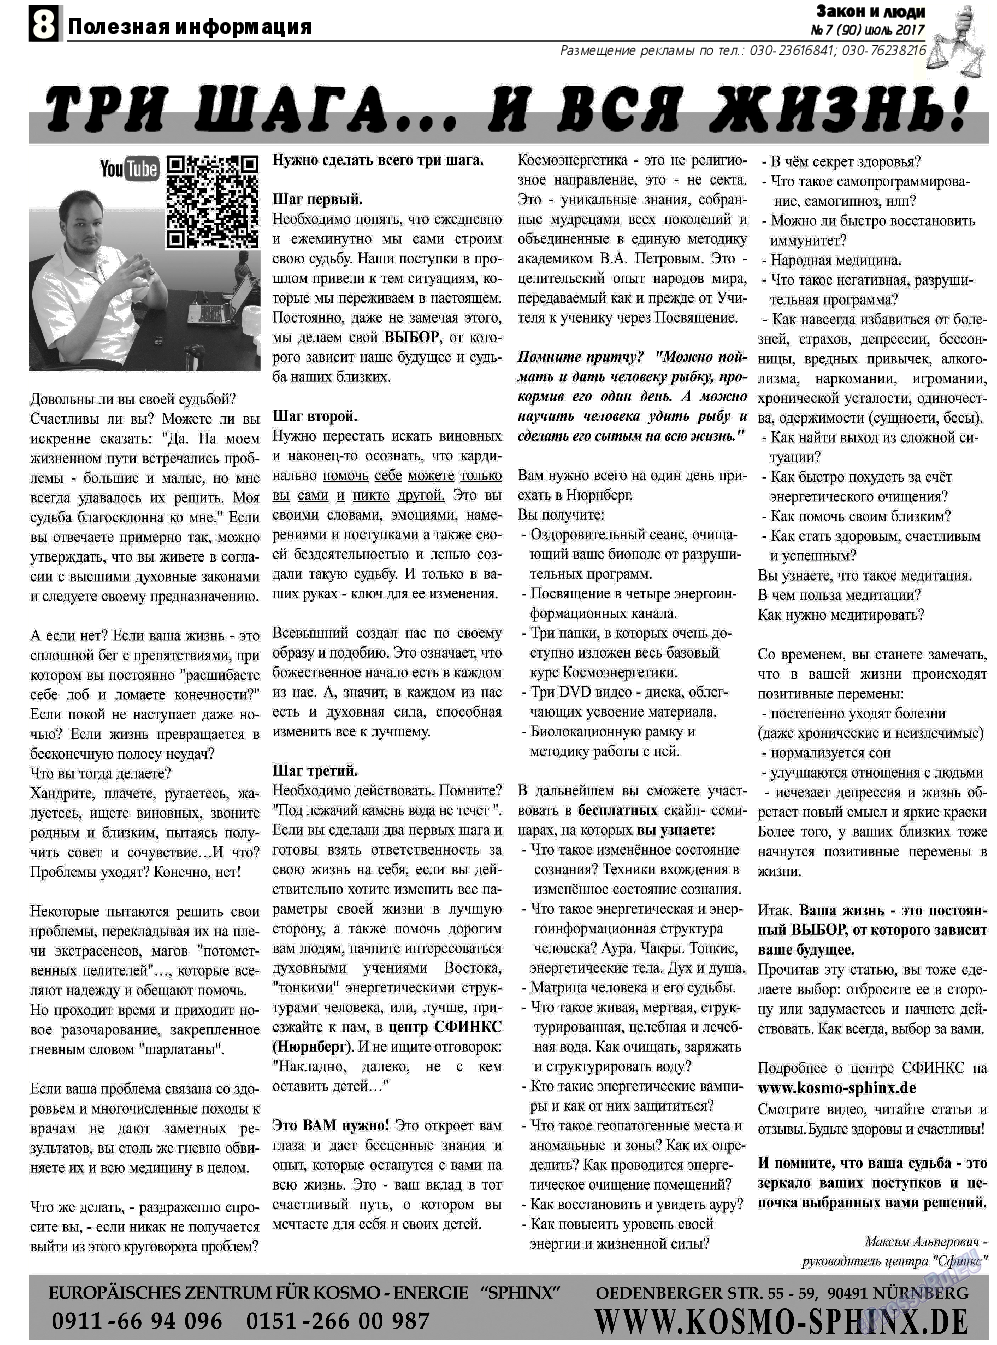 Закон и люди, газета. 2017 №7 стр.8